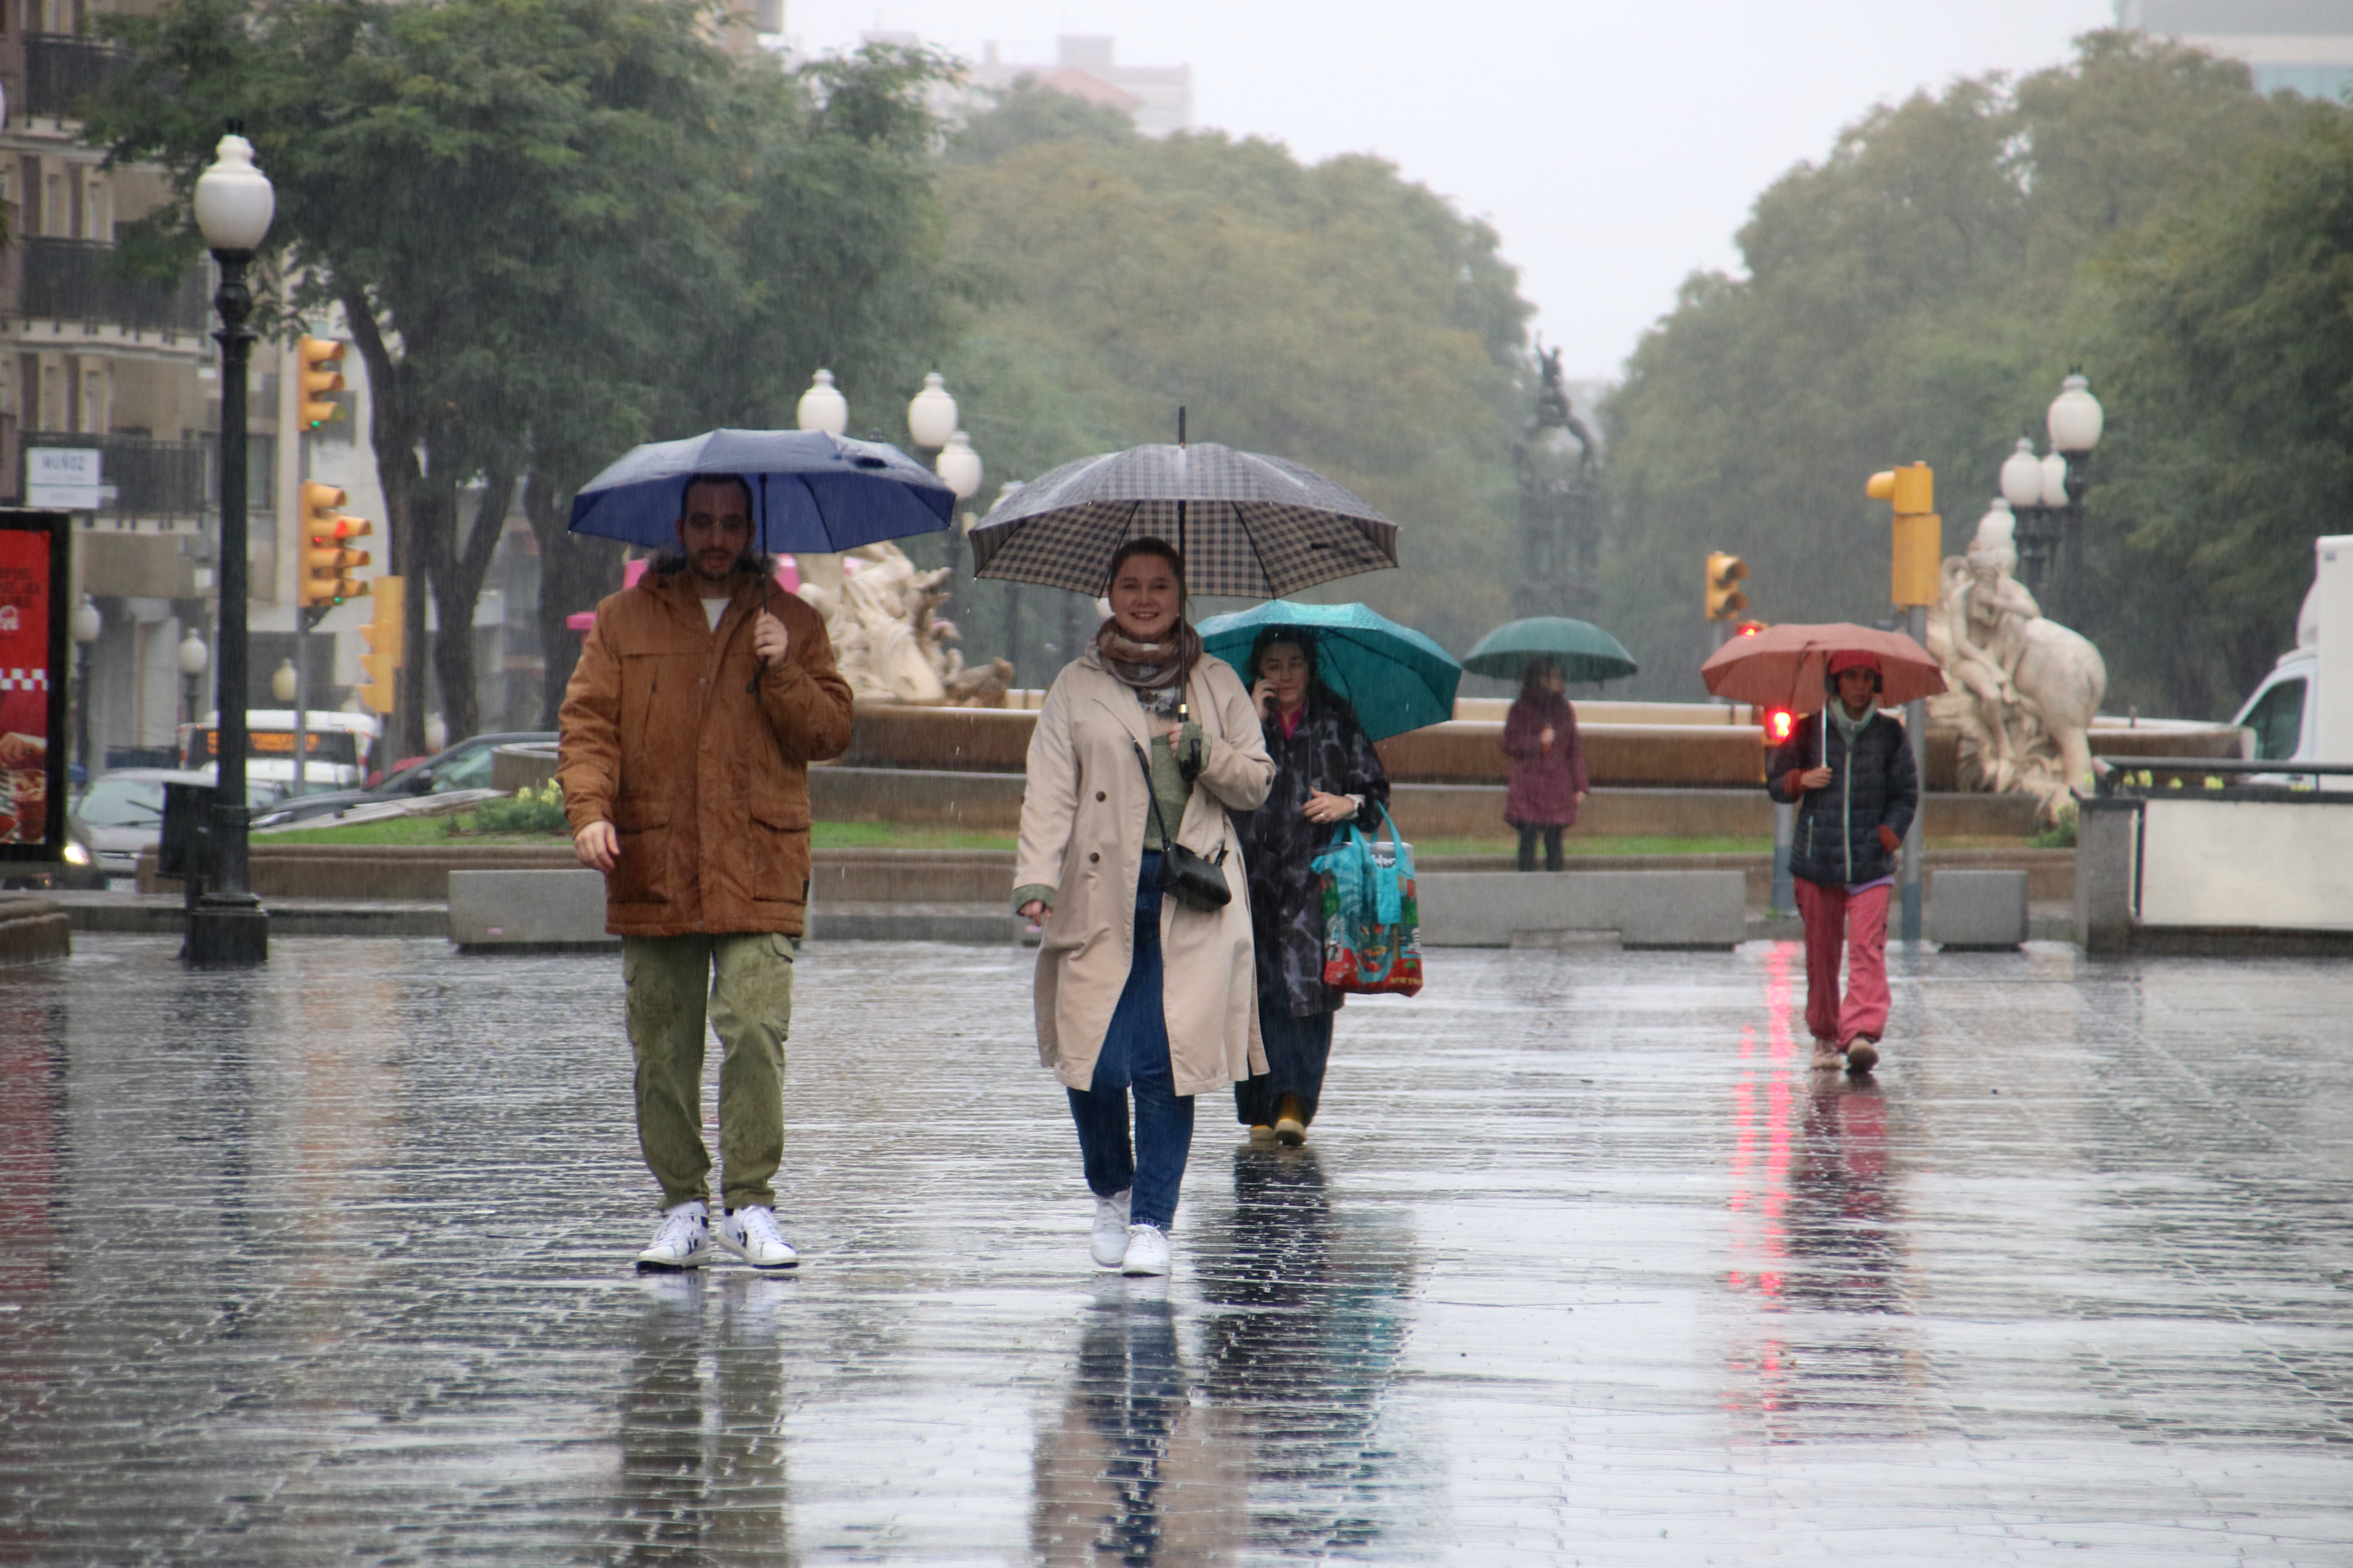 People walking through Tarragona in the rain